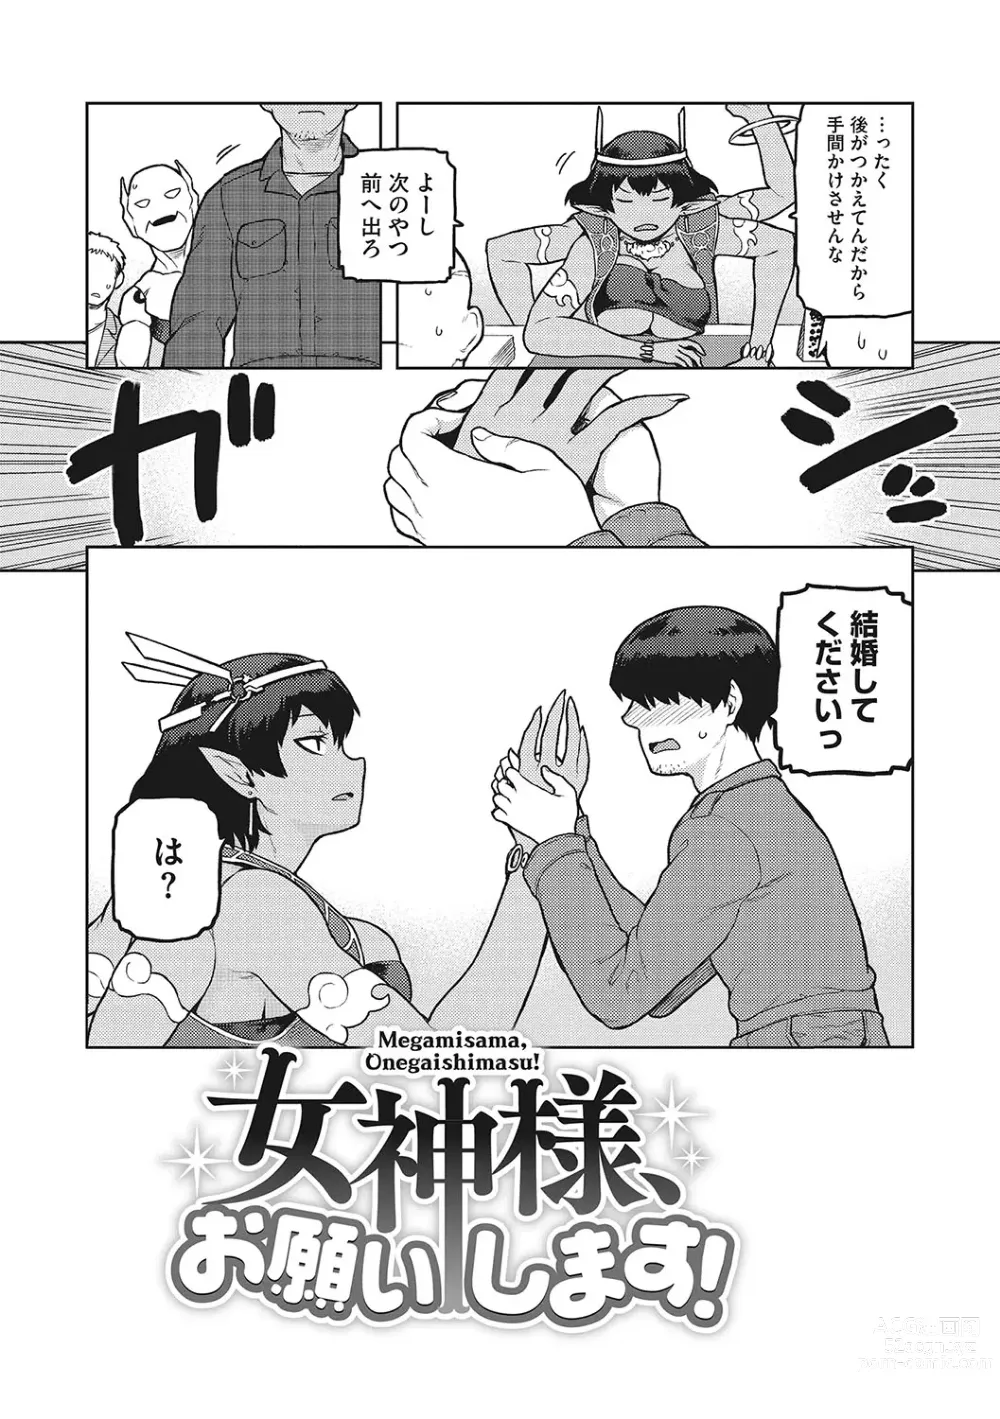 Page 5 of manga I.SyuWa.Karn Alph Lyla